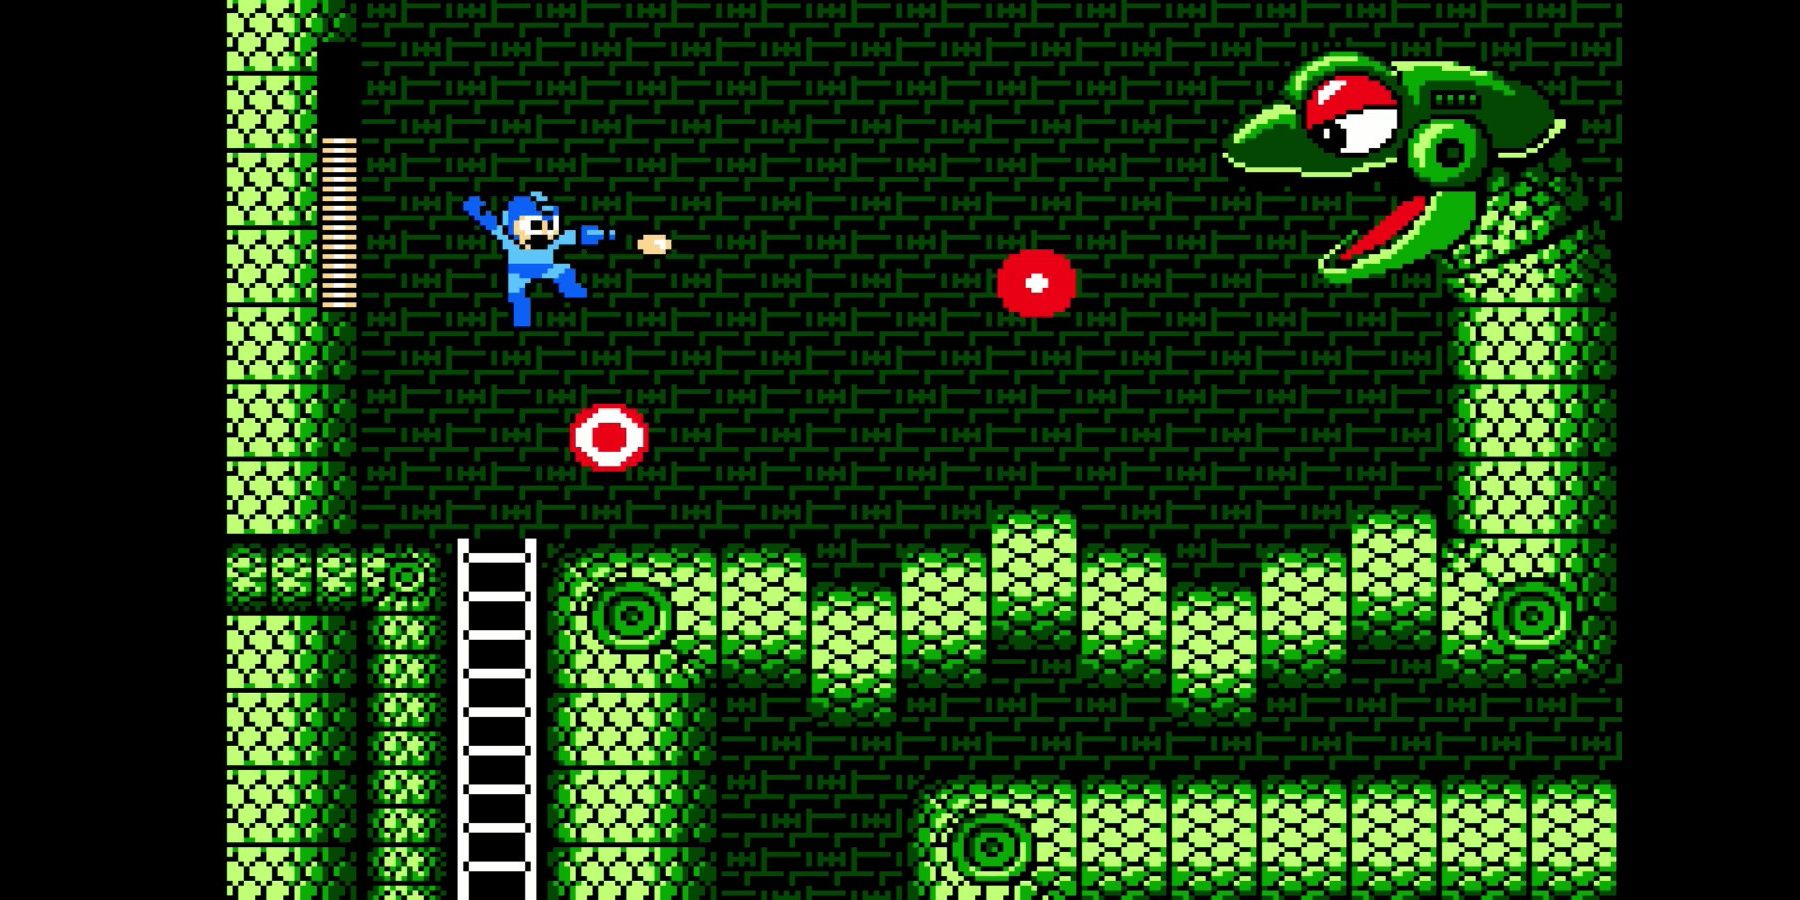 Megaman shooting bullets at a snake